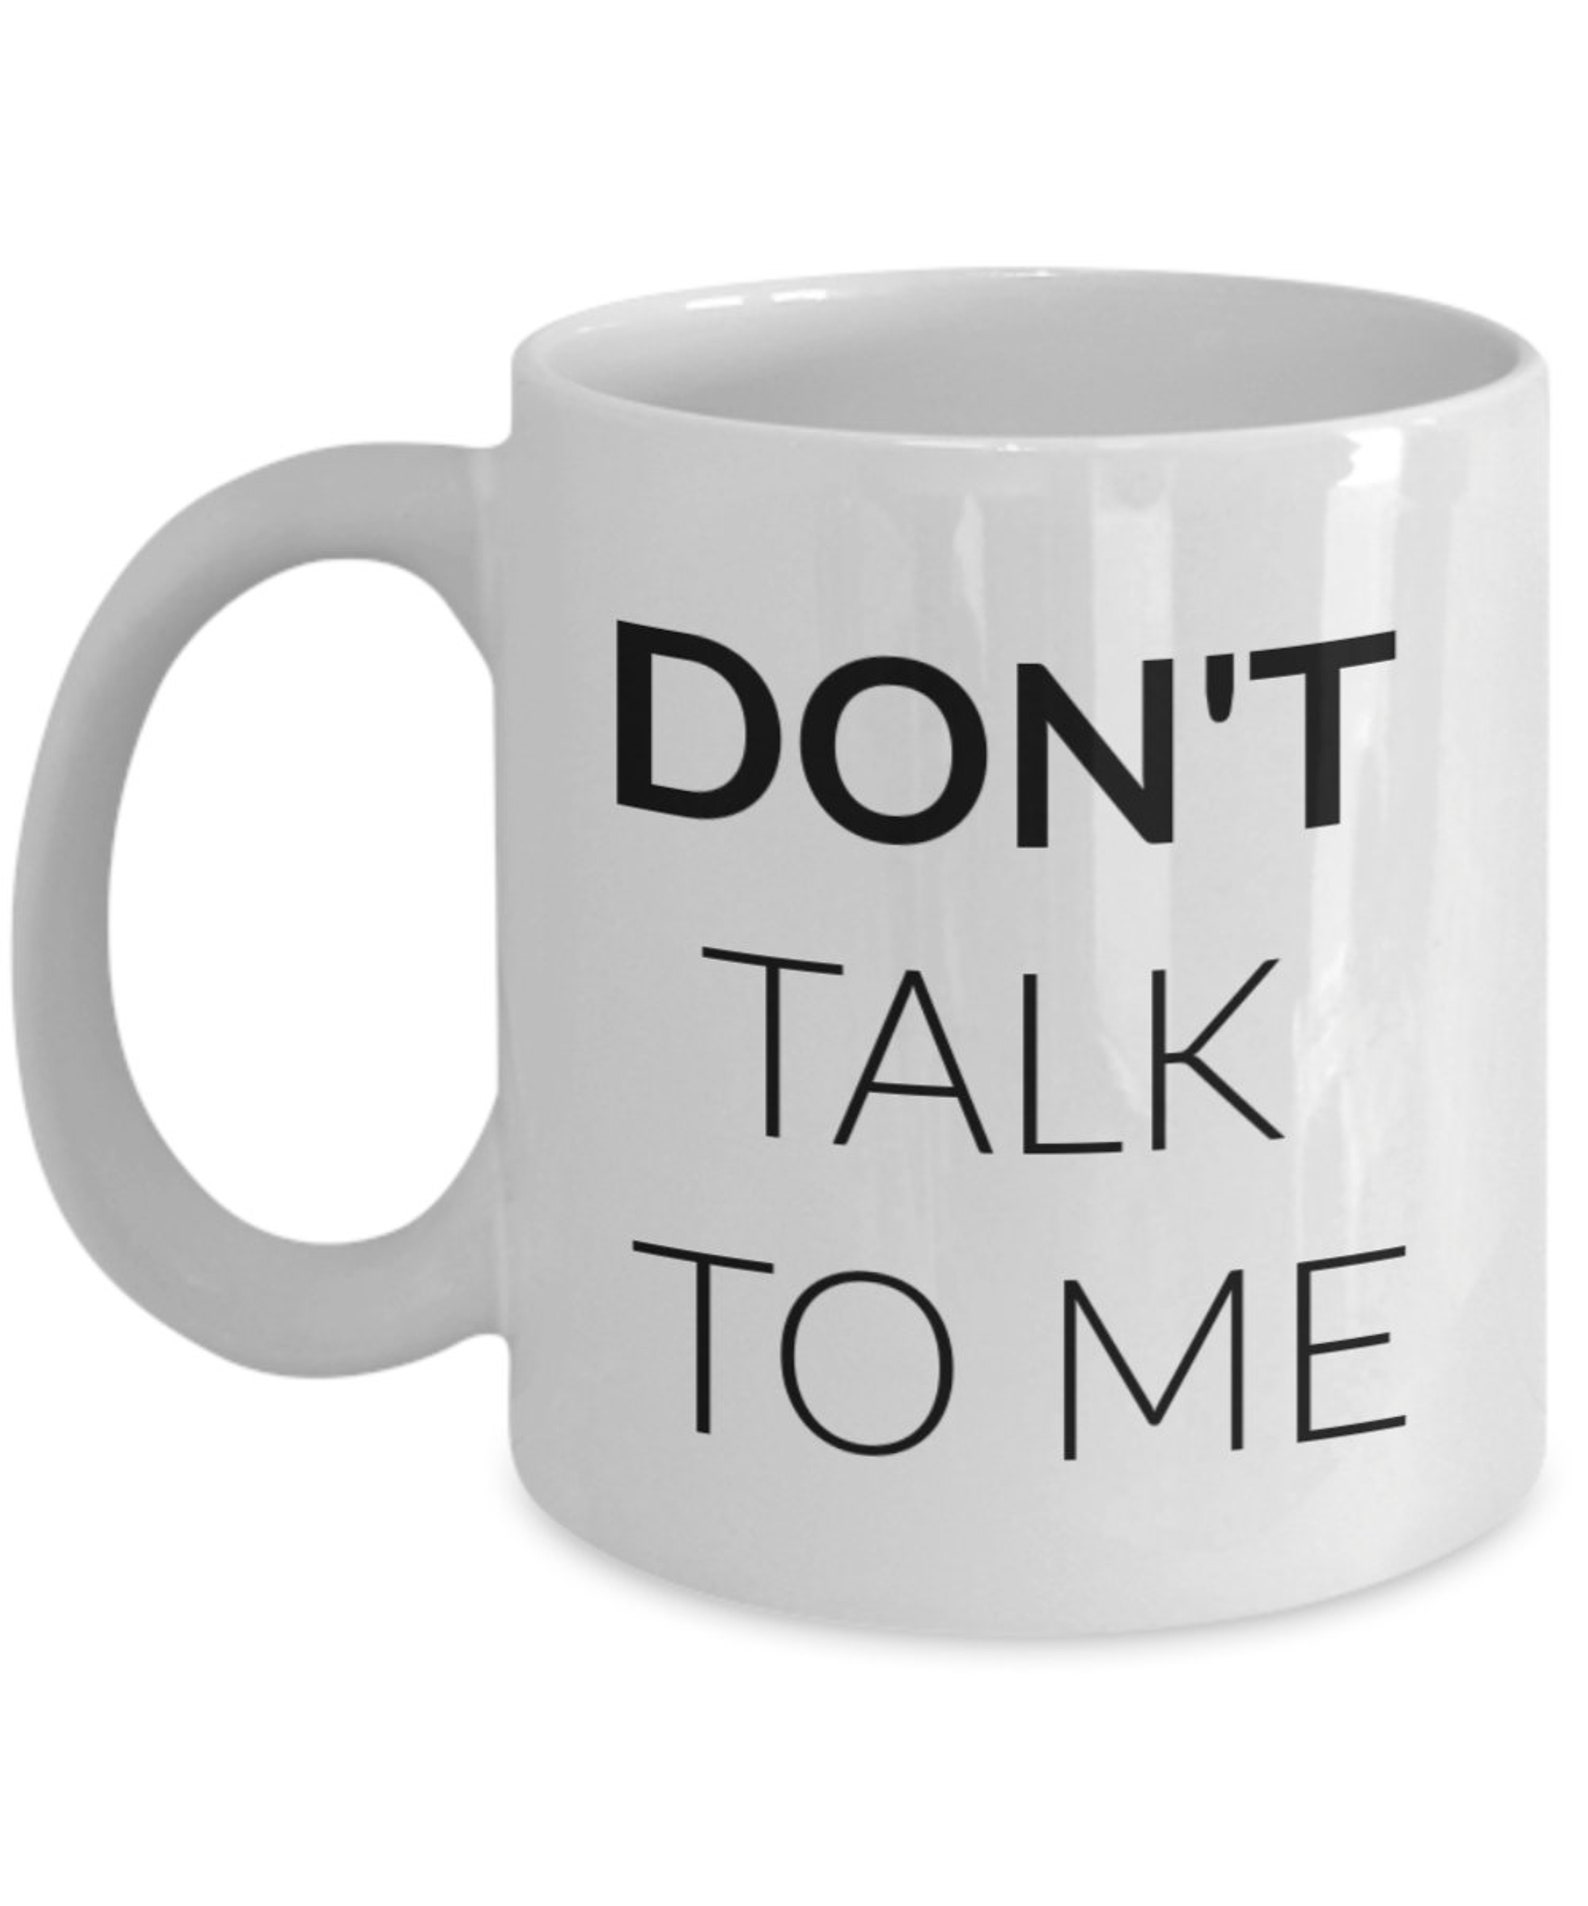 Dont talk to me coffee mug | Etsy